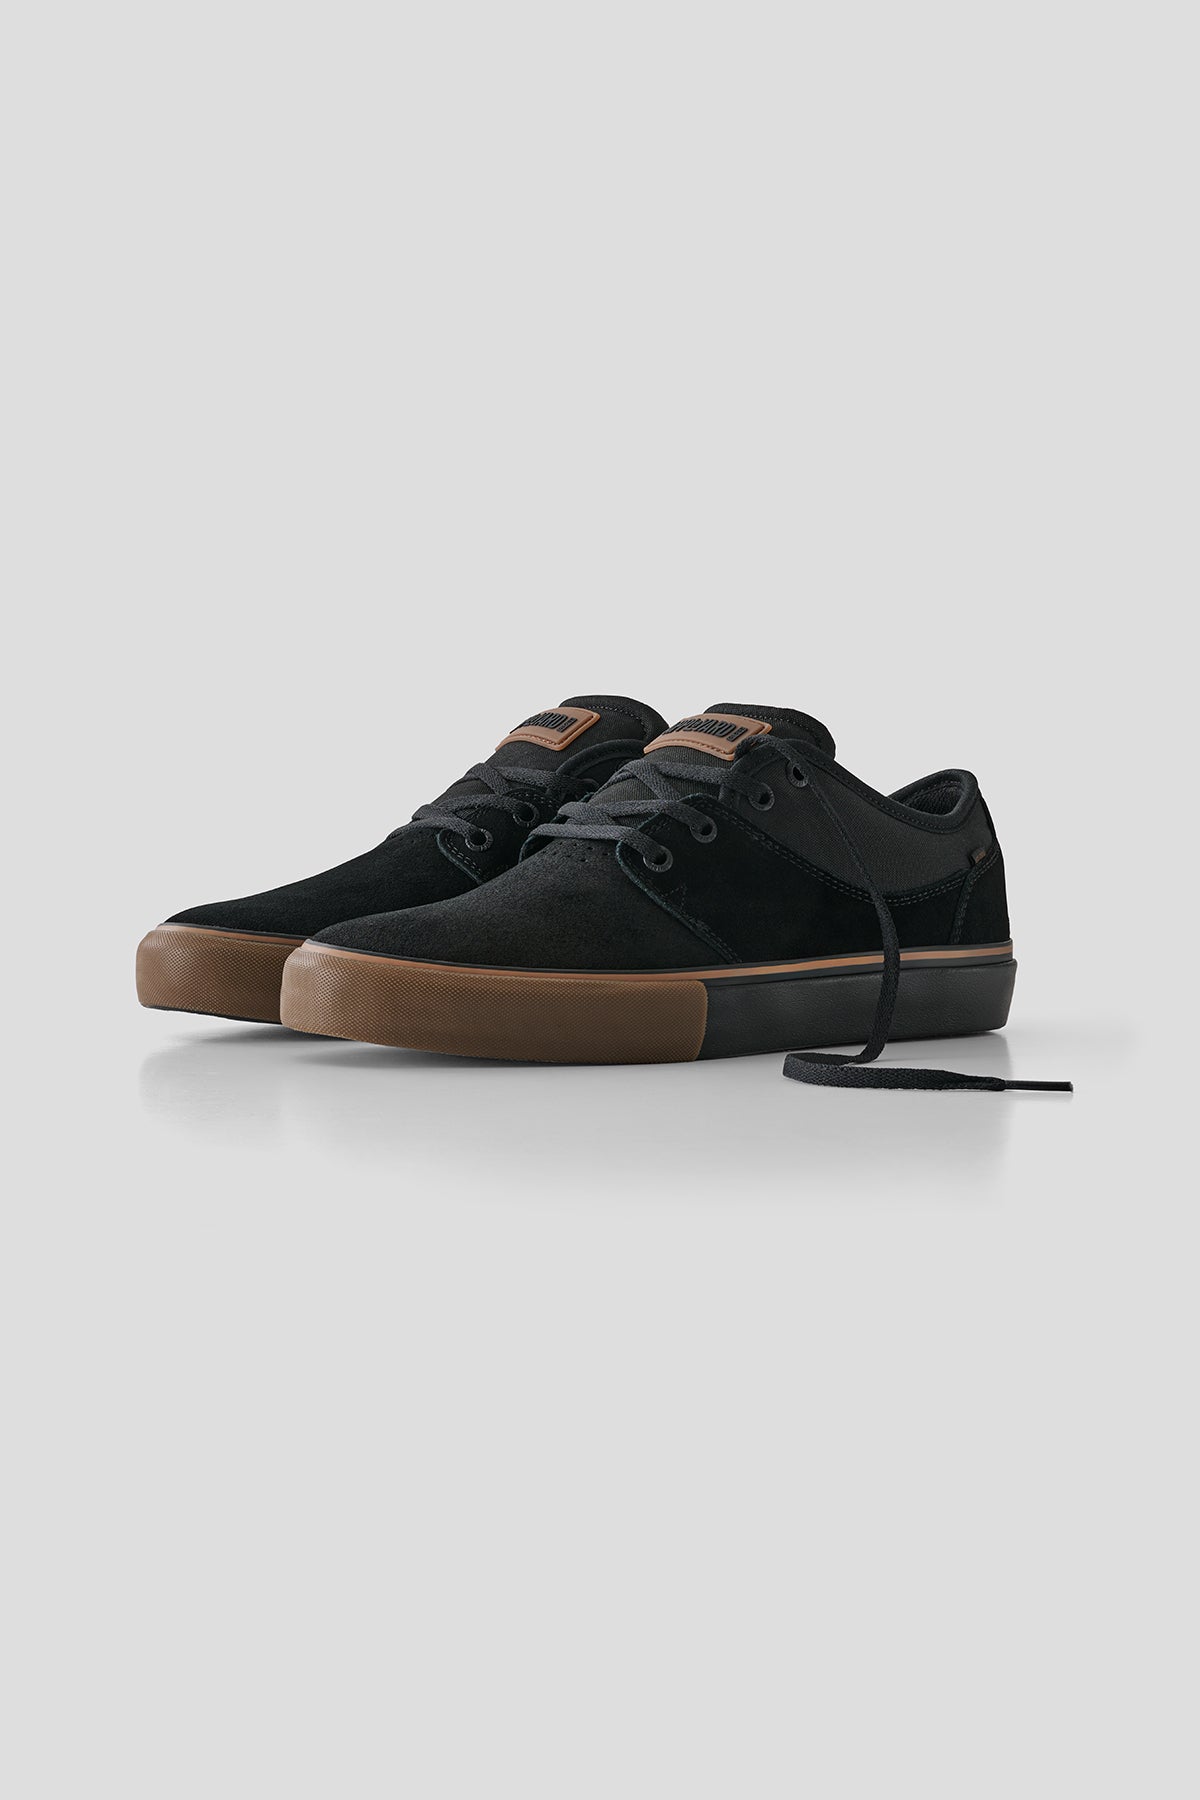 Globe - Mahalo - Zwart/Gum - skateboard Schoenen